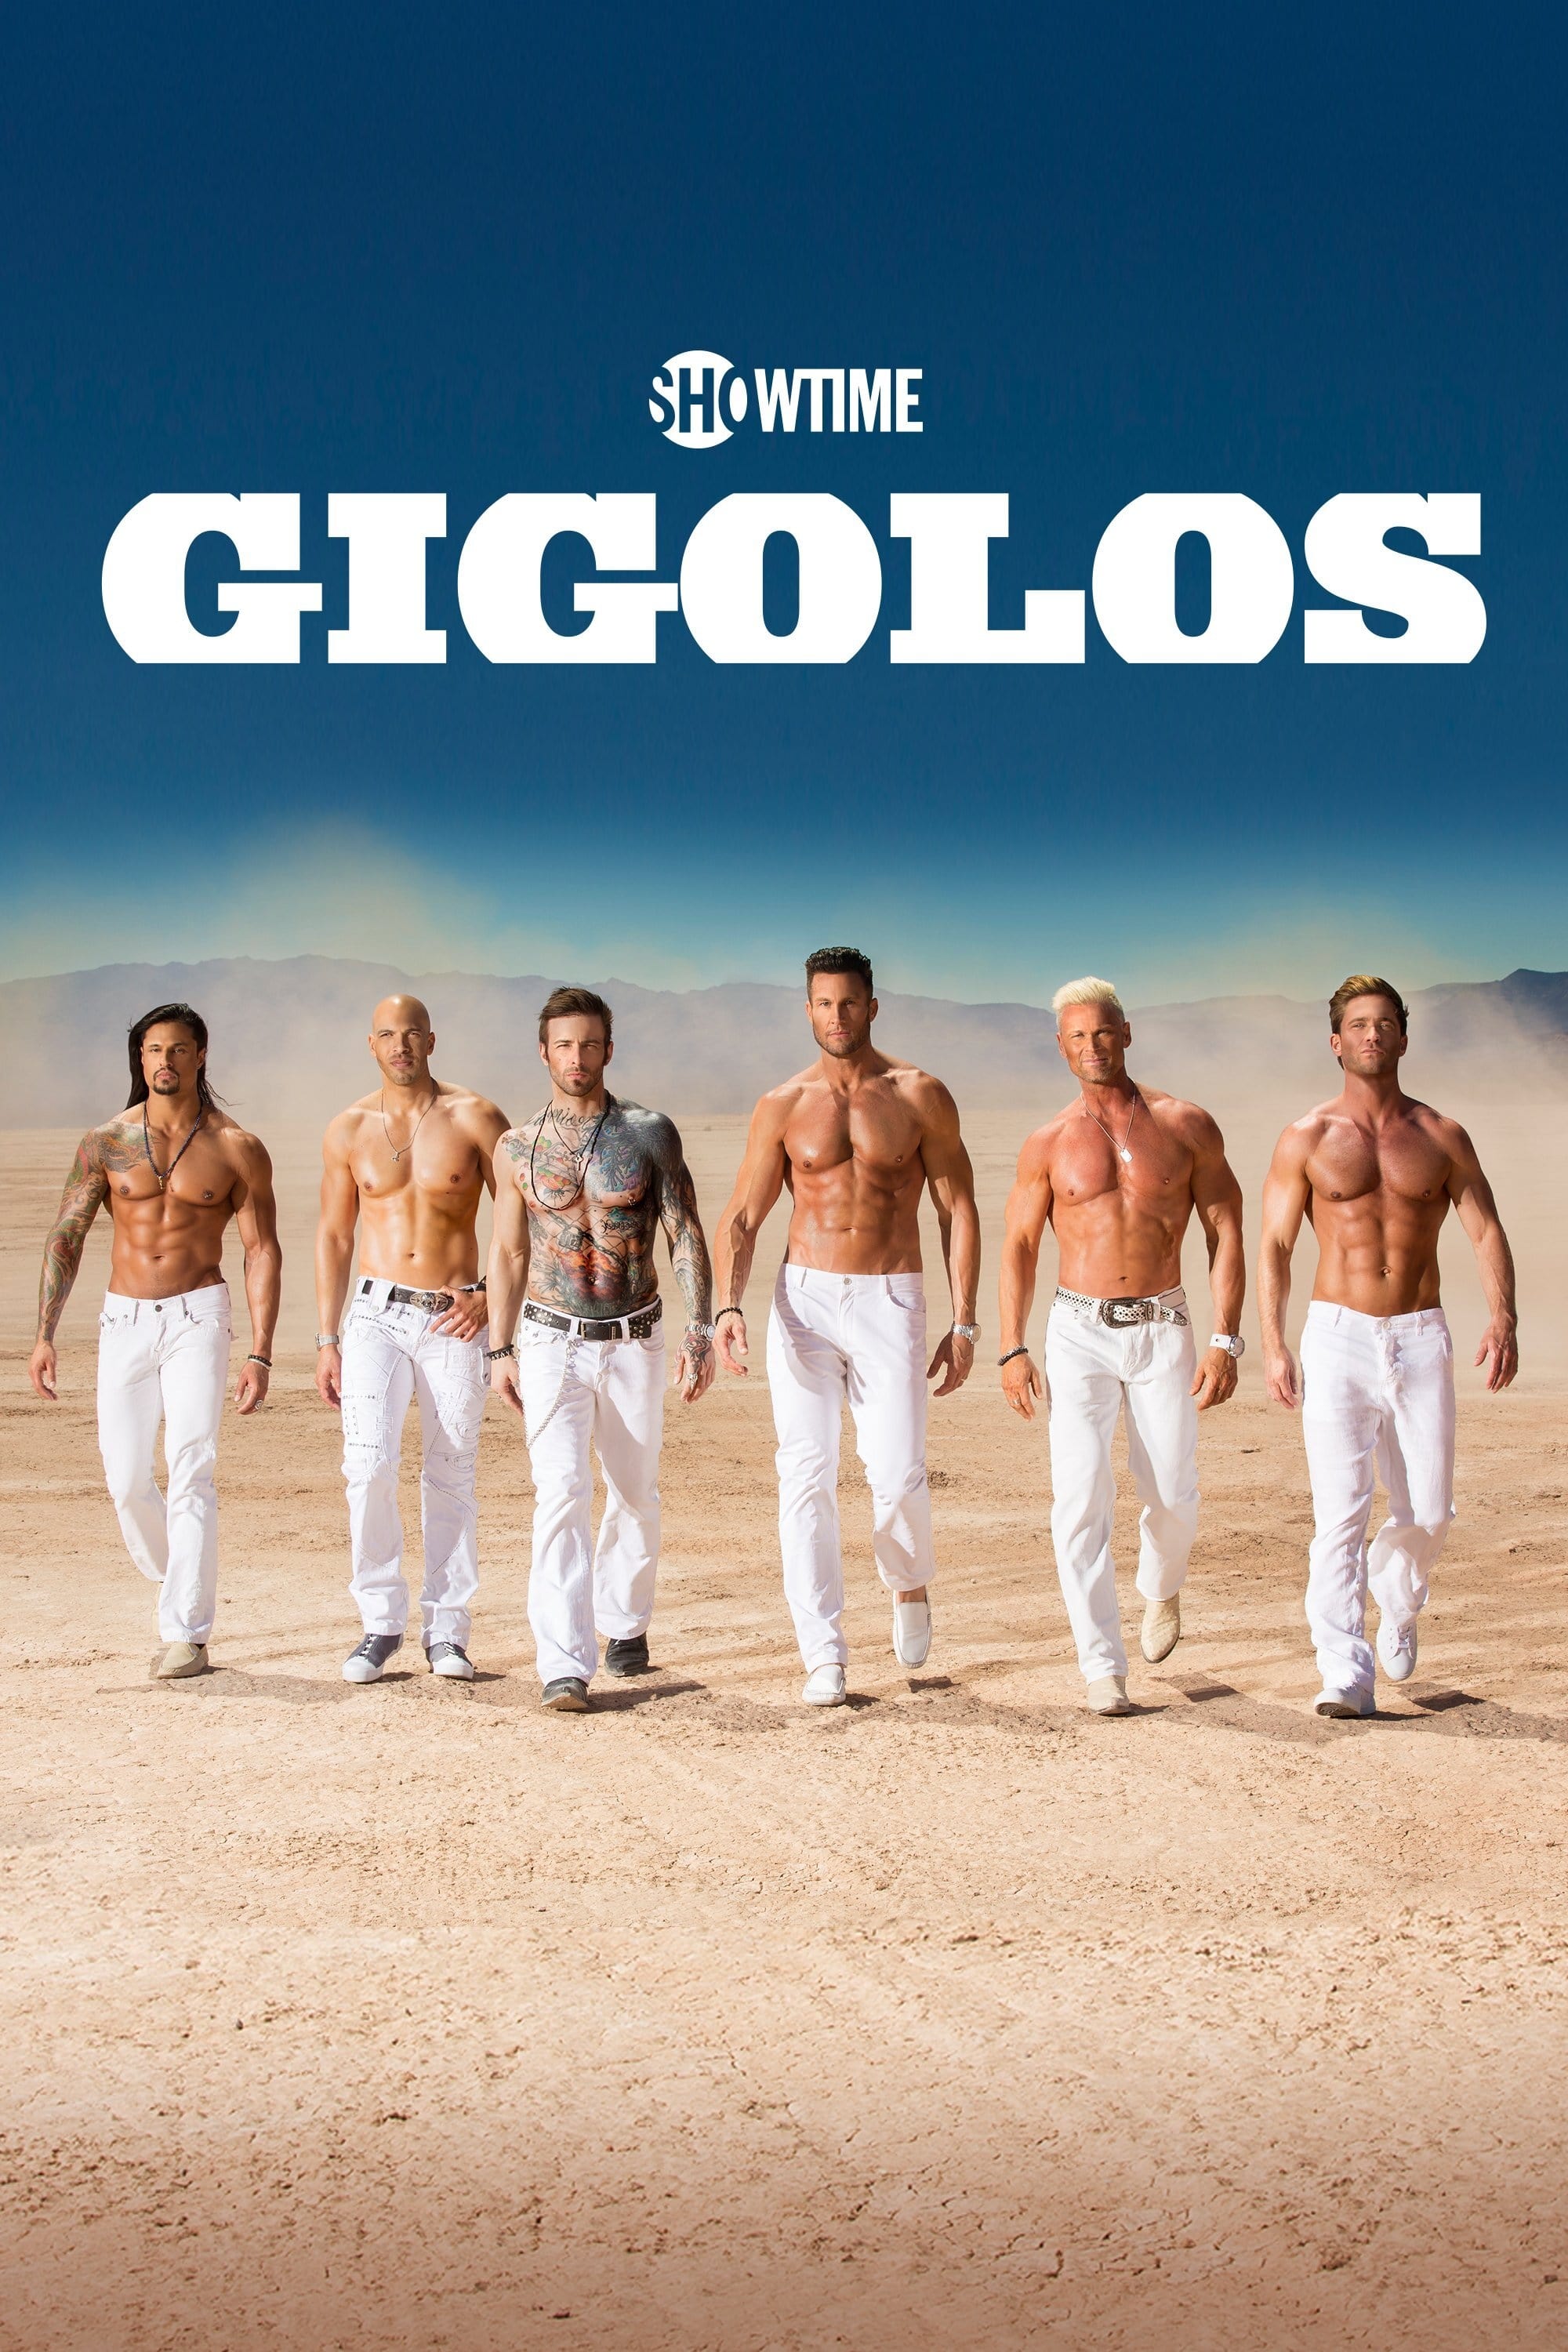 Gigolos (2011)